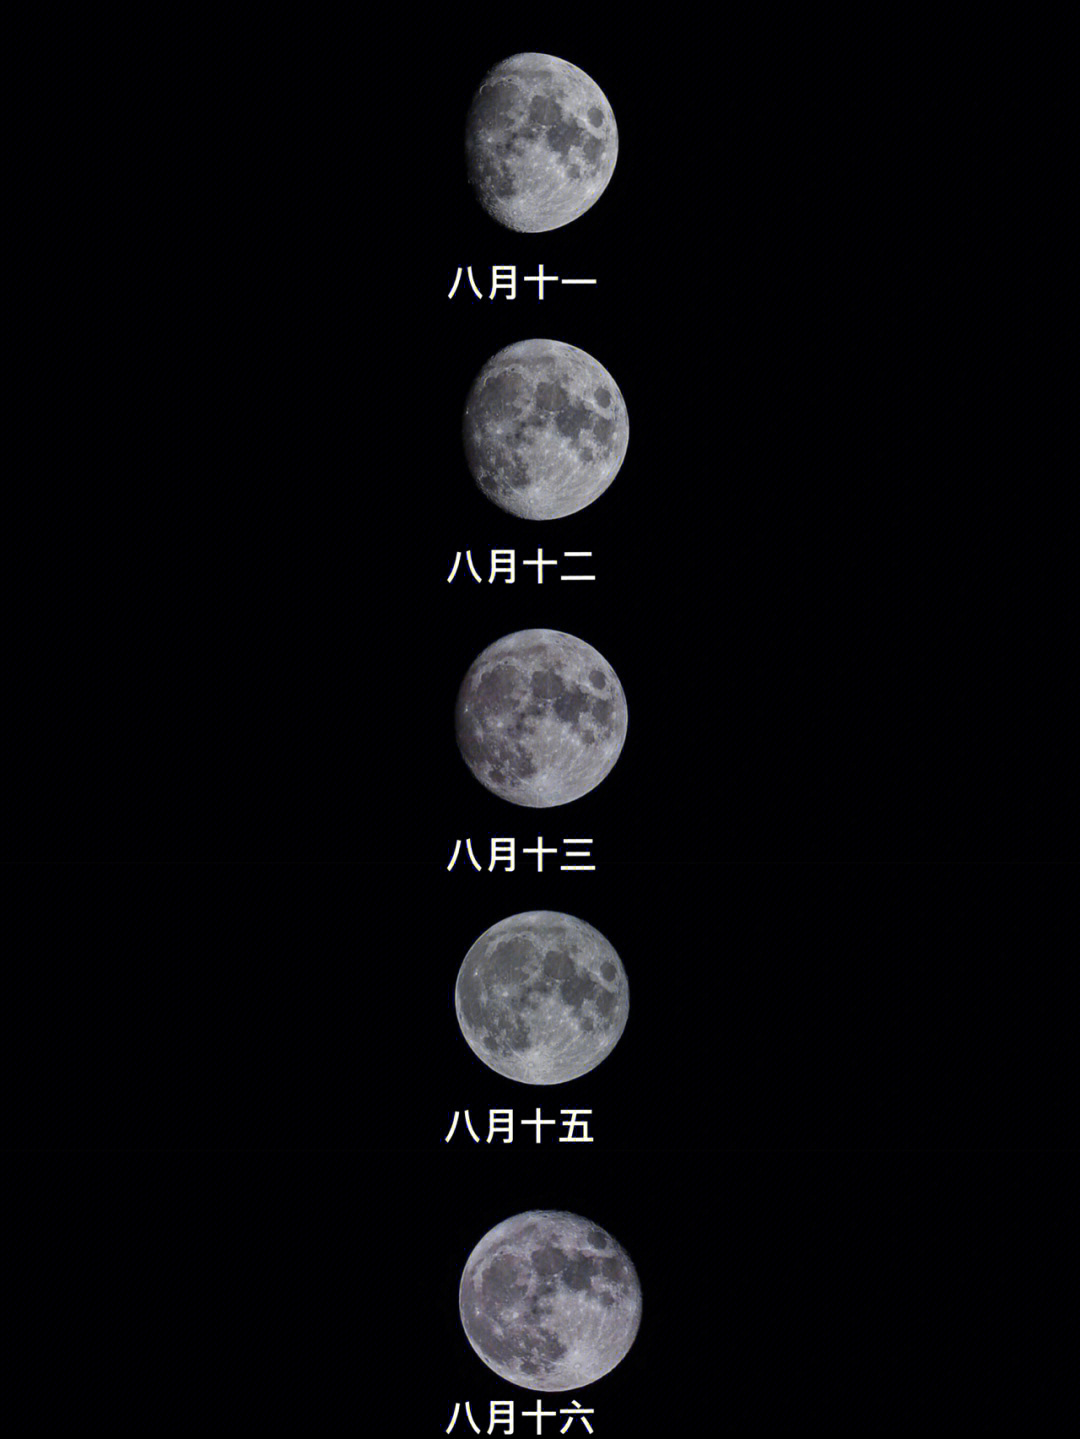 苹果11拍月亮参数图片